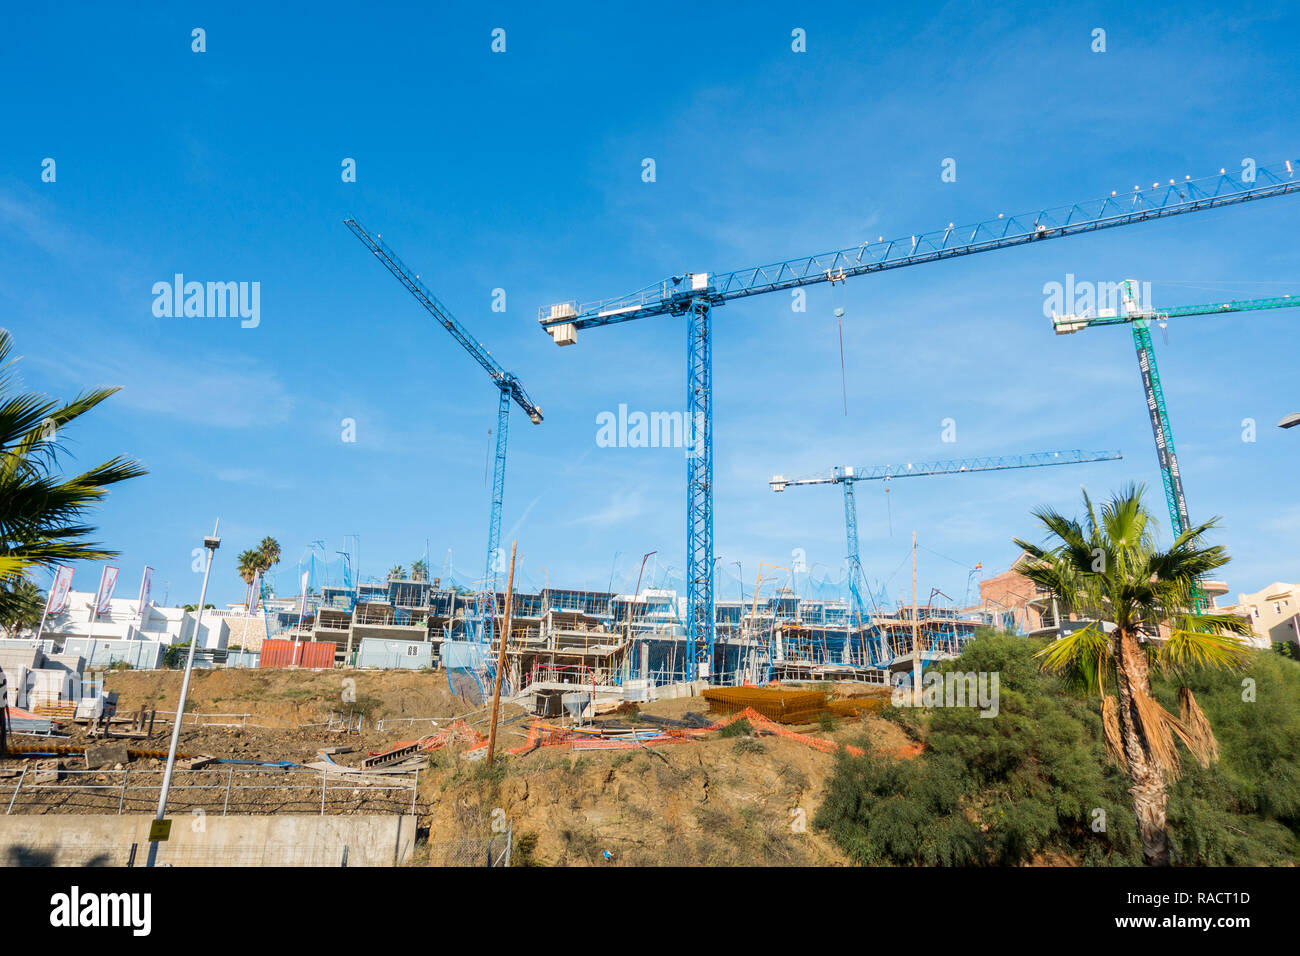 Un chantier avec des grues bleu et édifice inachevé, complexe, Benalmadena, Espagne. Banque D'Images